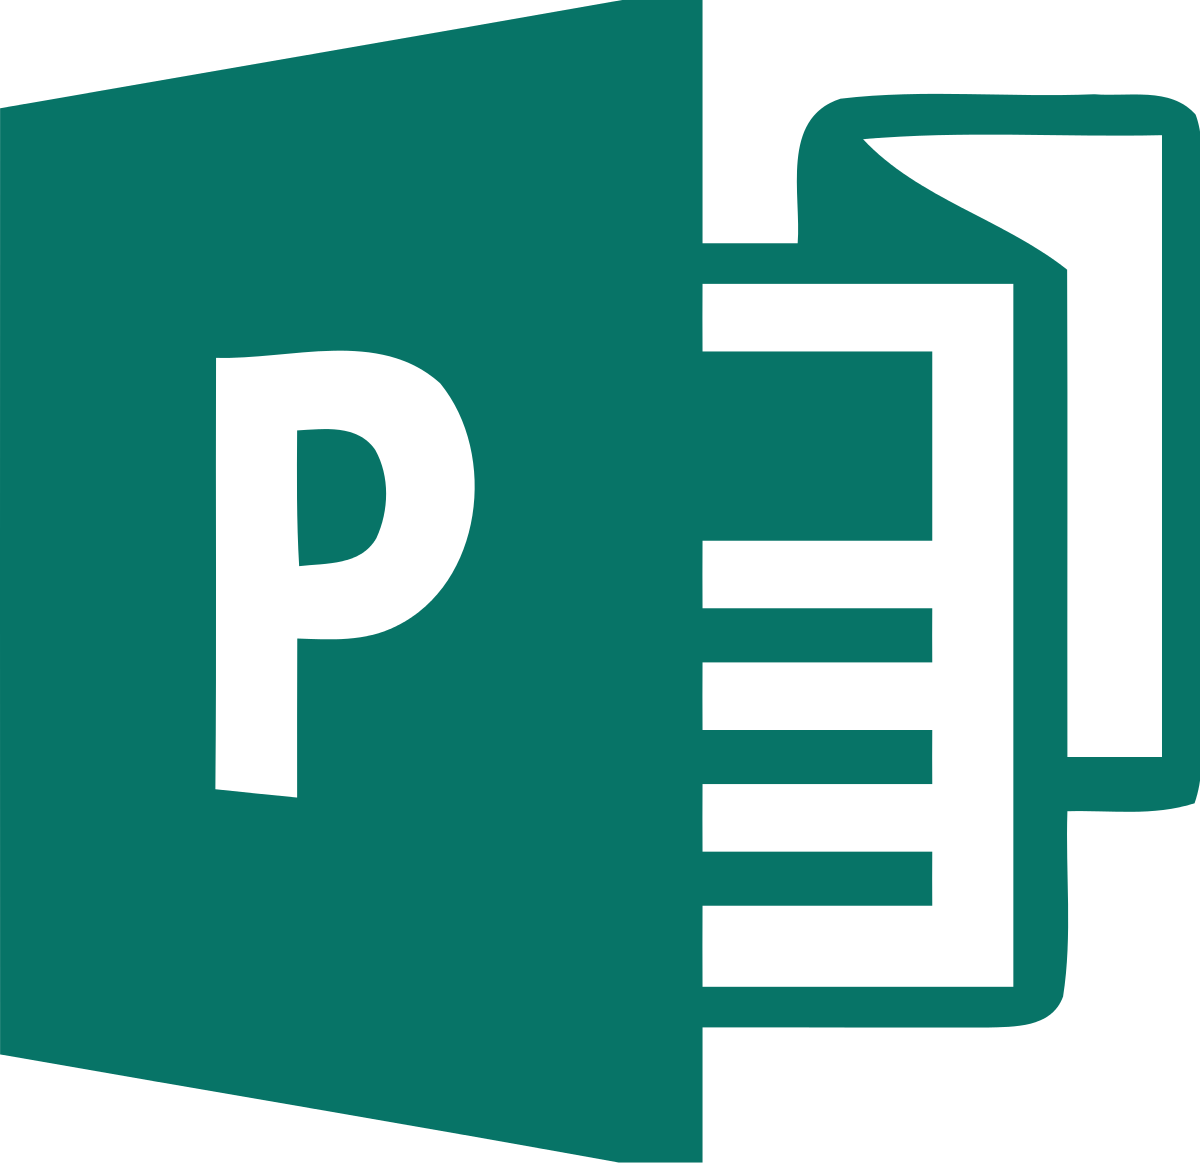 Logo Microsoft Publisher